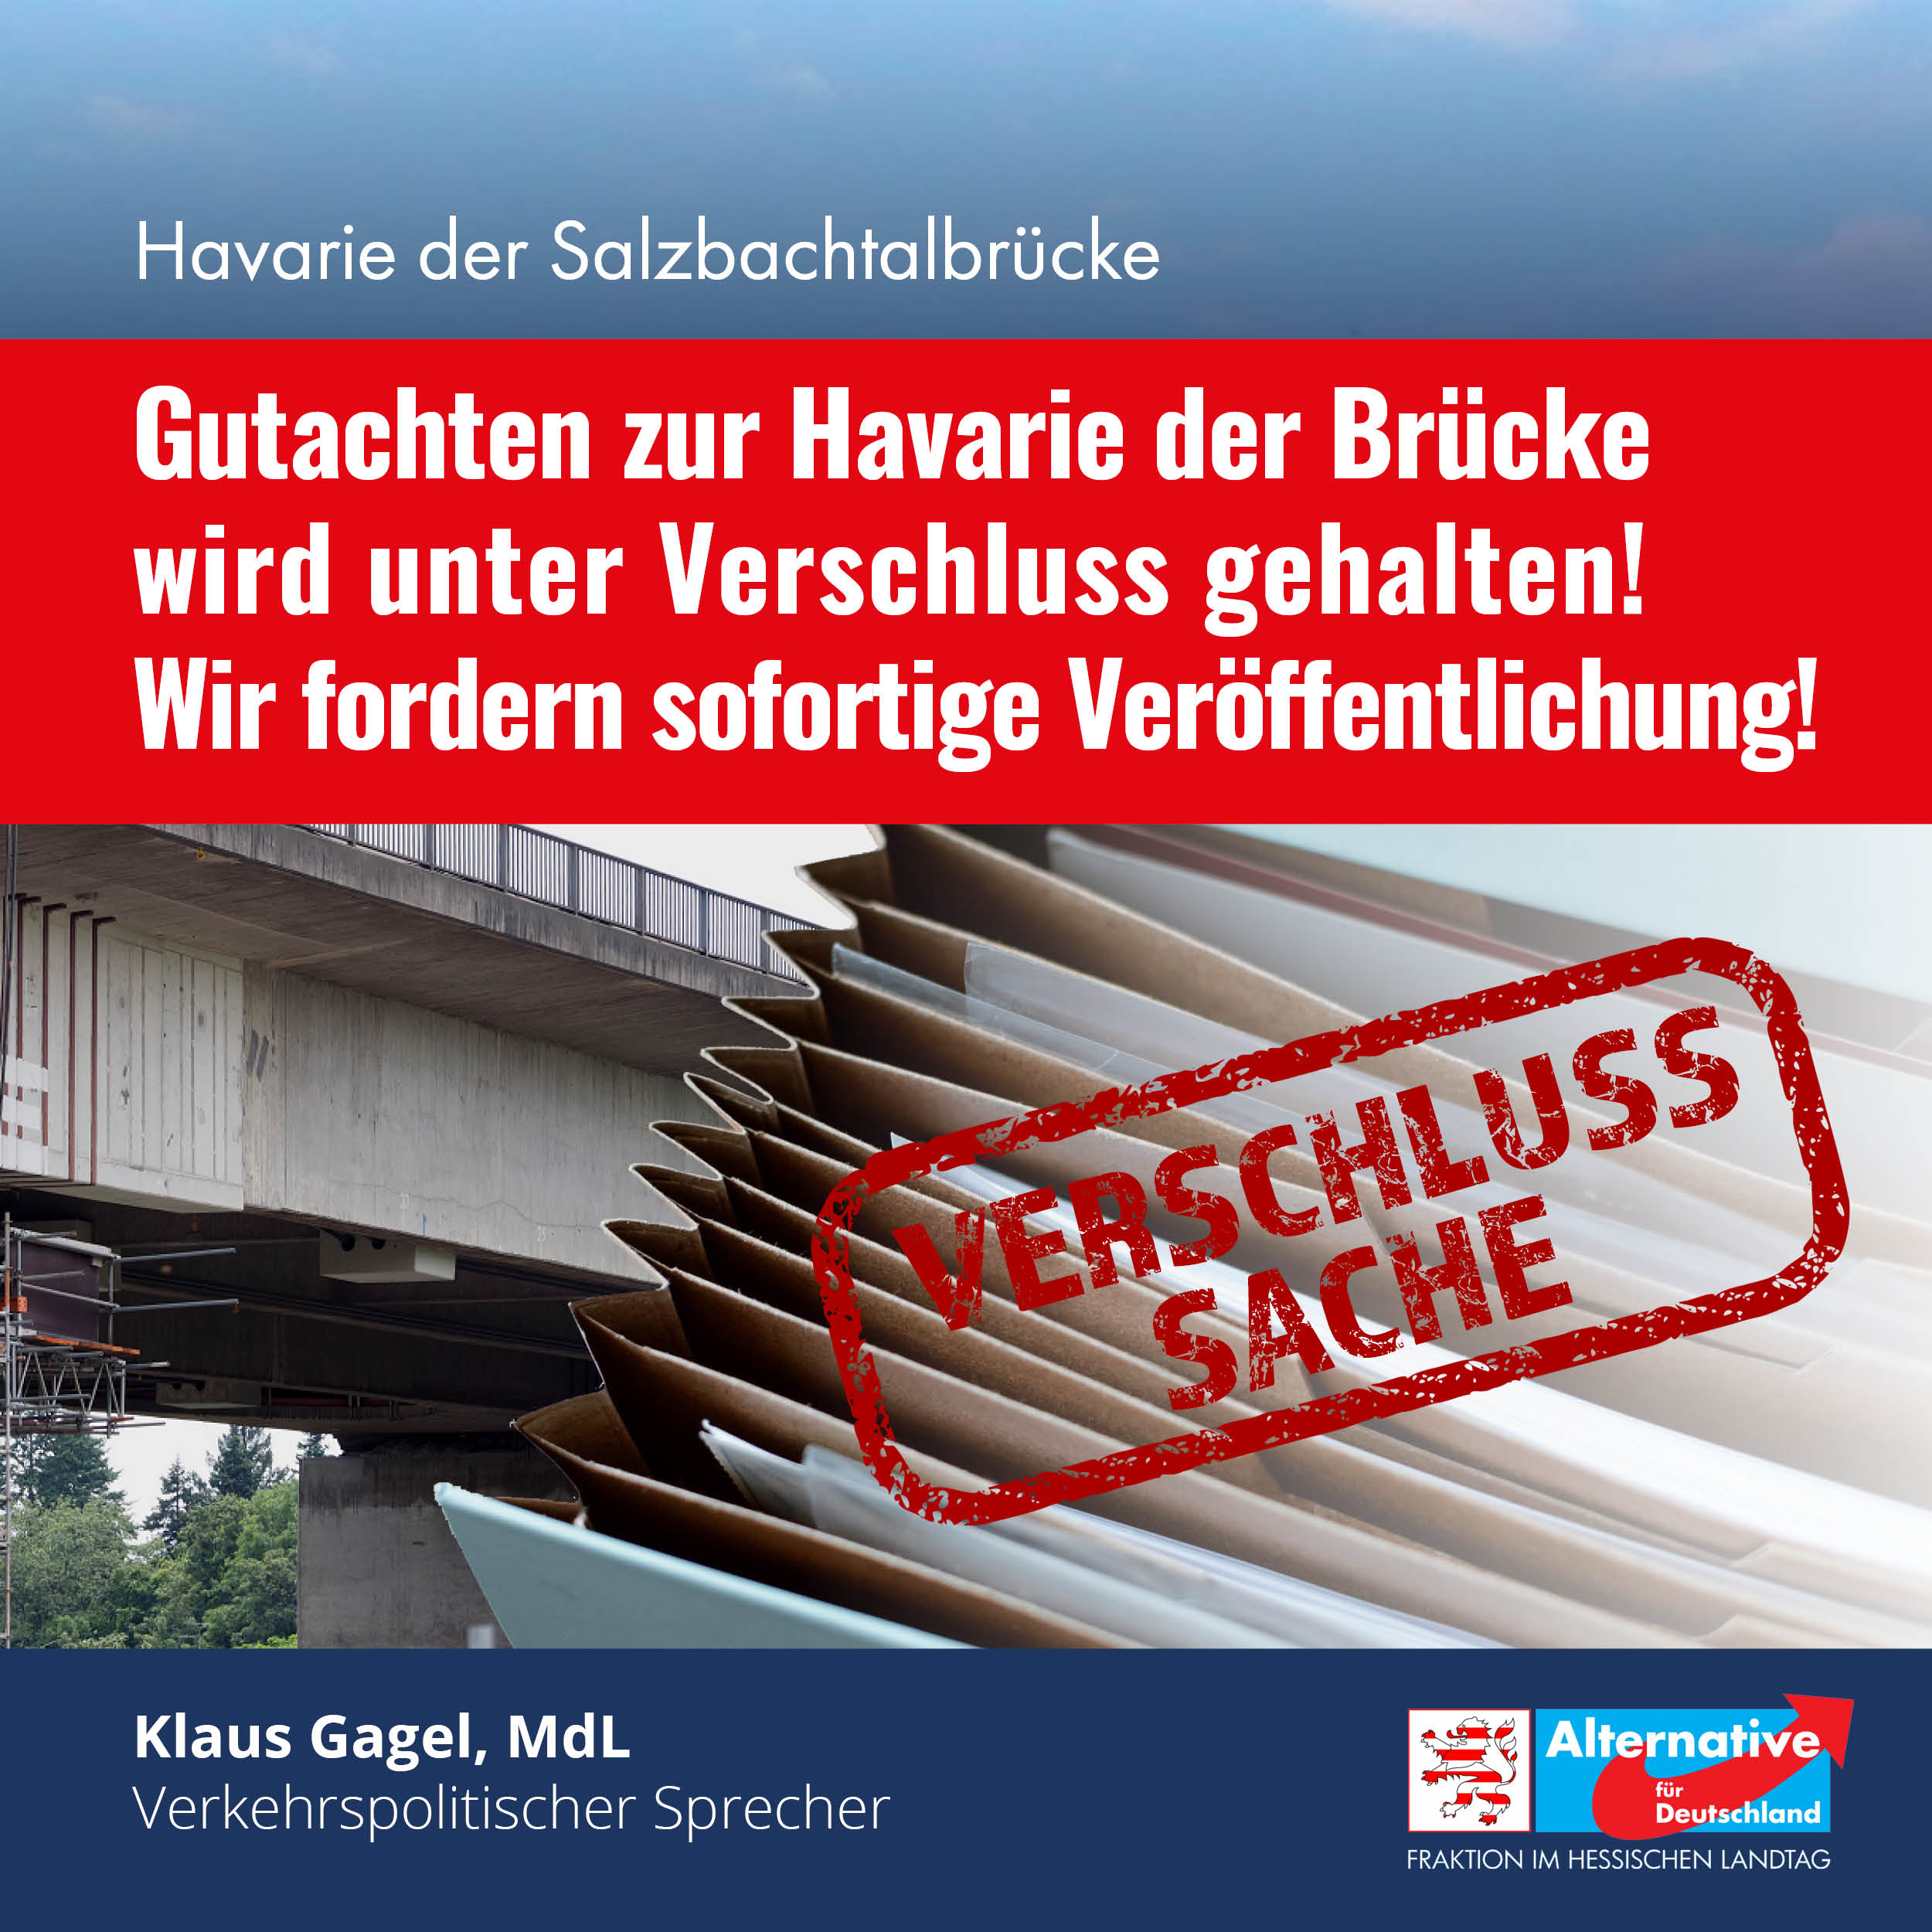 Salzbachtalbrücke: "Das Gutachten muss zeitnah veröffentlicht werden"